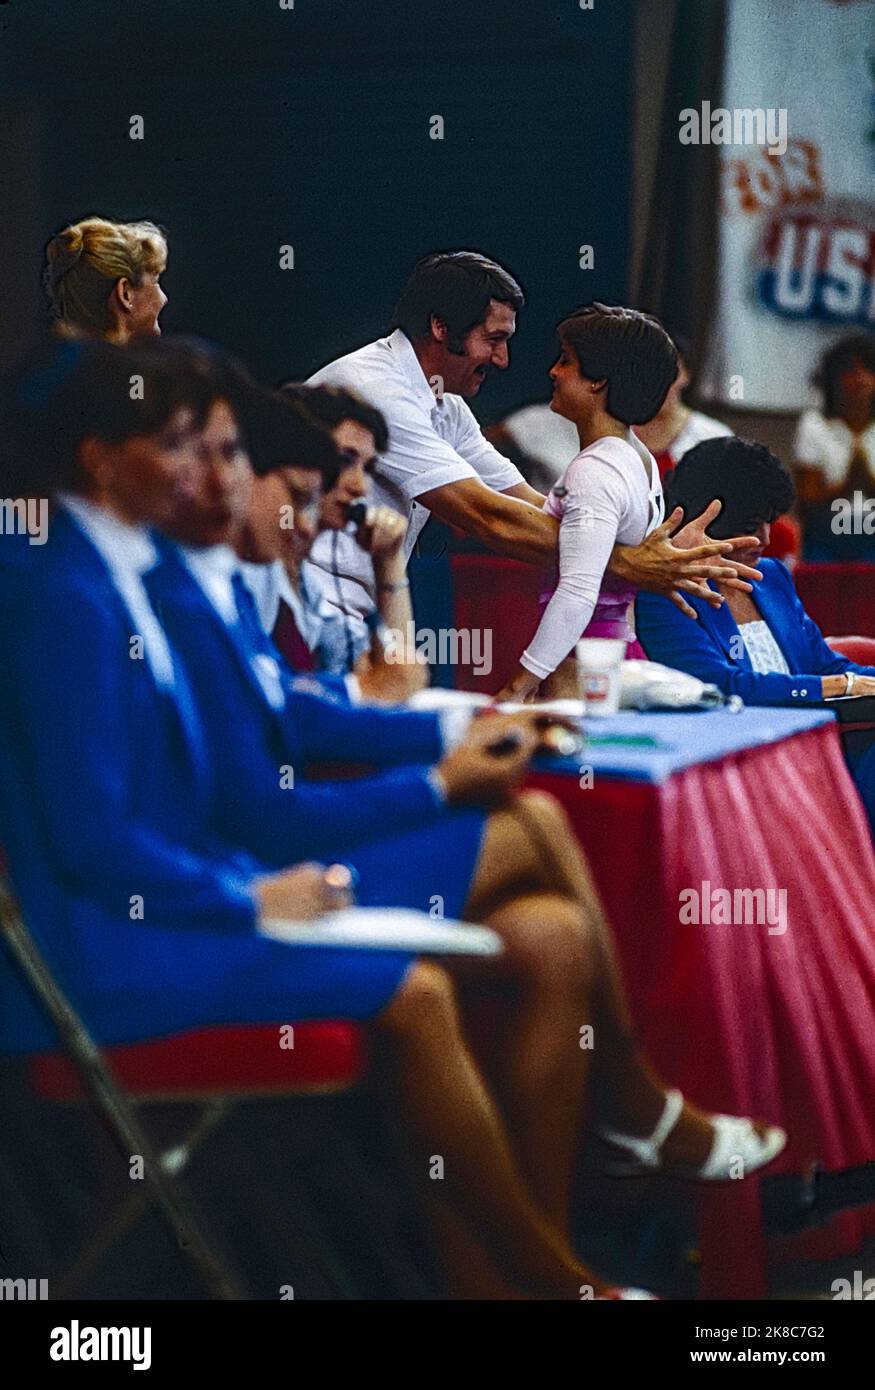 Mary Lou Retton (USA) participe aux épreuves de gymnastique olympiques de 1984 avec l'entraîneur Béla Károlyi. Banque D'Images